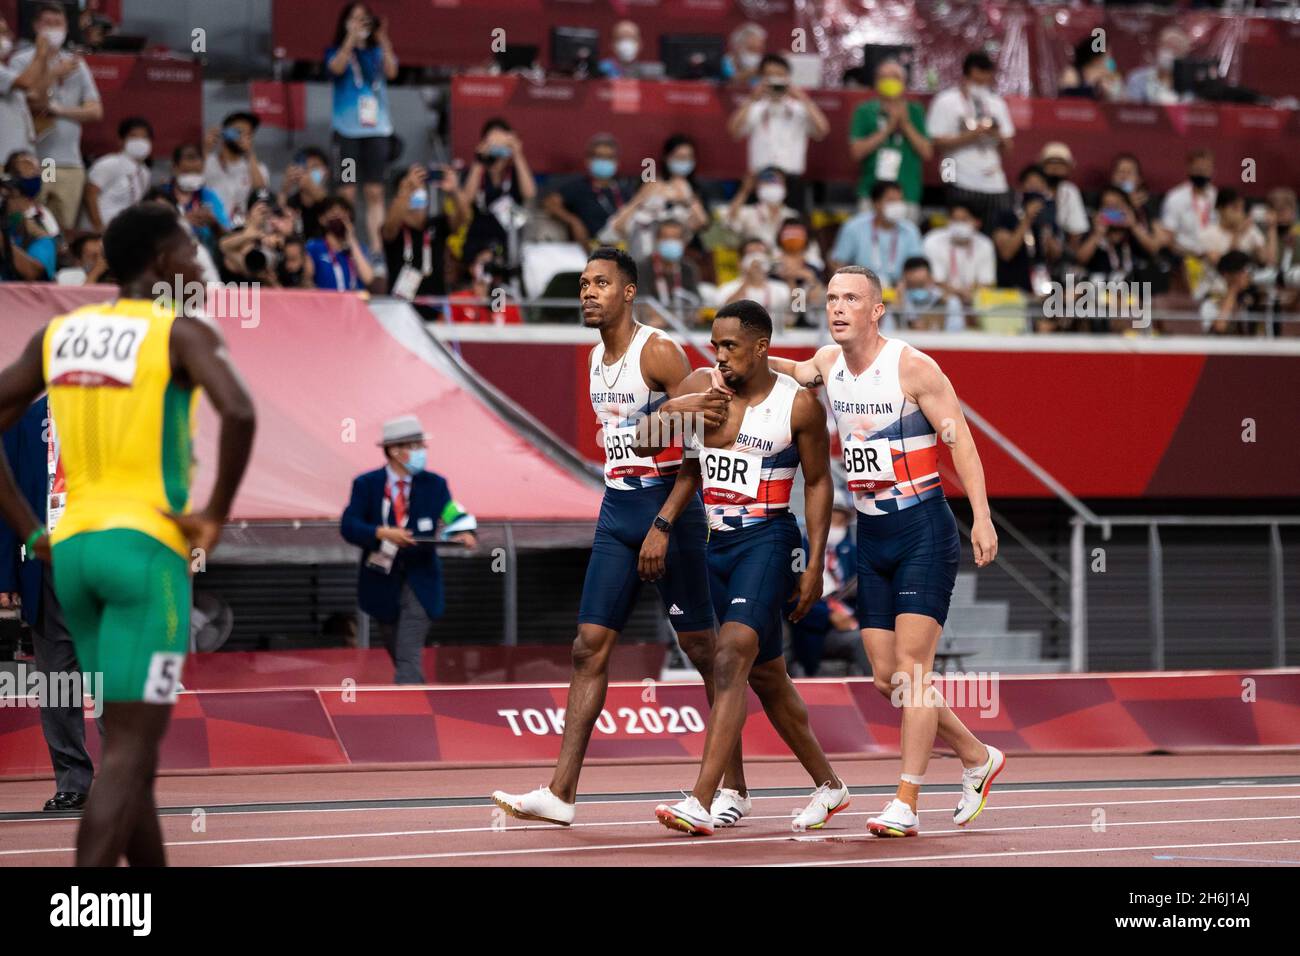 Großbritanniens Männer-Staffelteam mit 4x100 m-Übergröße erspielen bei den olympischen spielen in Tokio Silber. Mitchell-Blake, Kitty, Utah, Hughes. Stockfoto